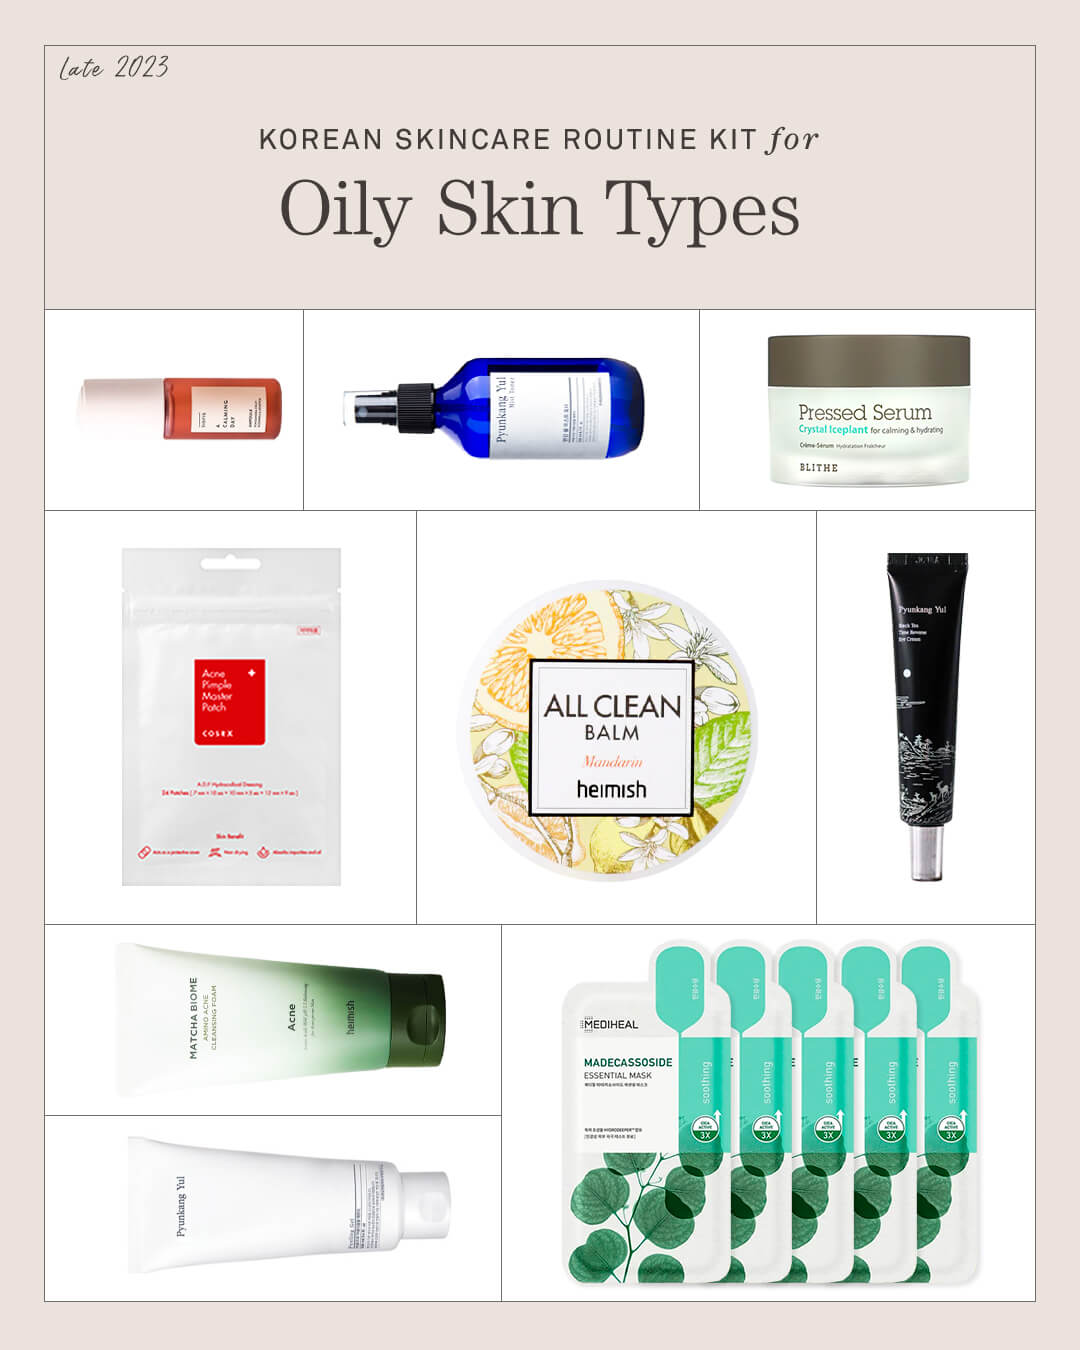 Ohlolly Korean Skincare Kit for Oily Skin Types